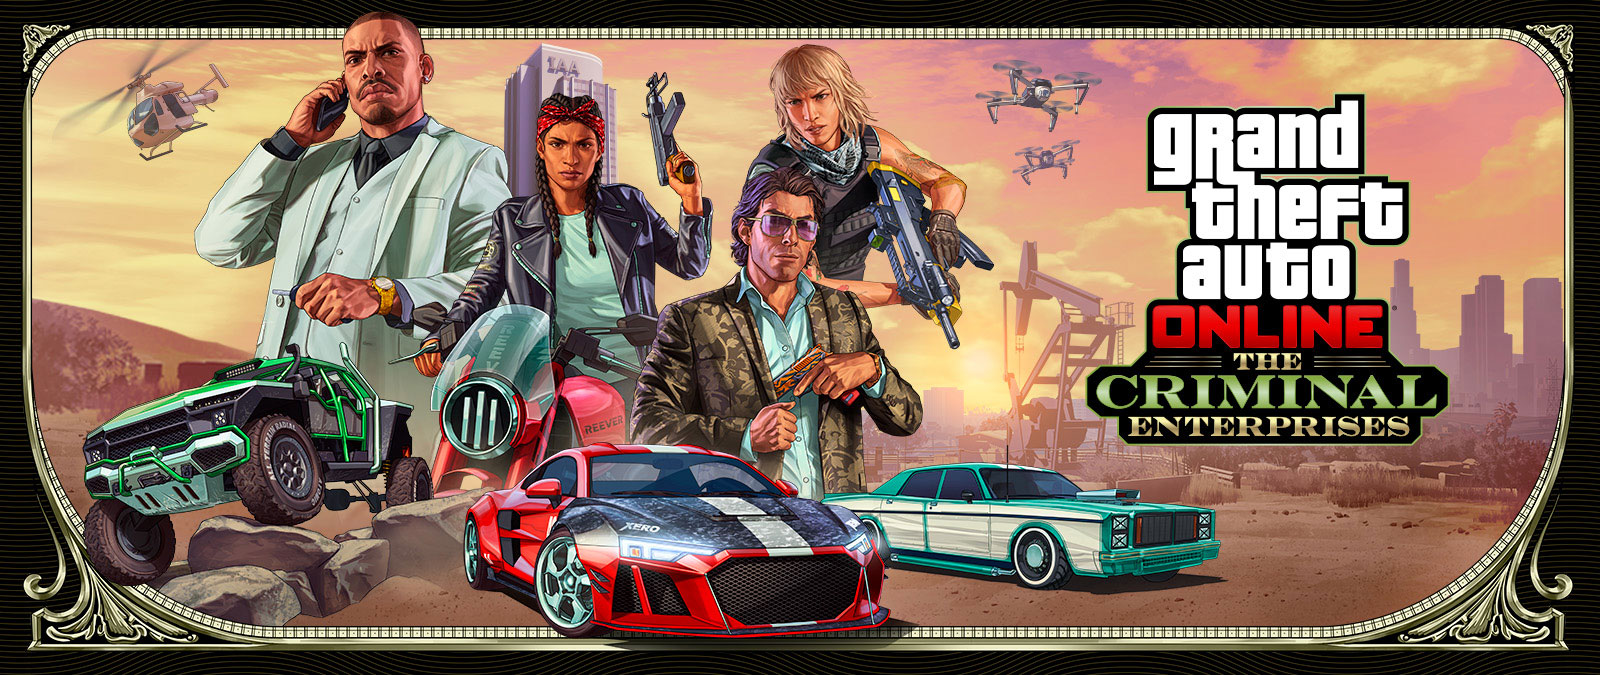 Grand Theft Auto Online : Entreprises criminelles, trois véhicules élégants concourent au premier plan tandis que quatre personnages posent au-dessus.